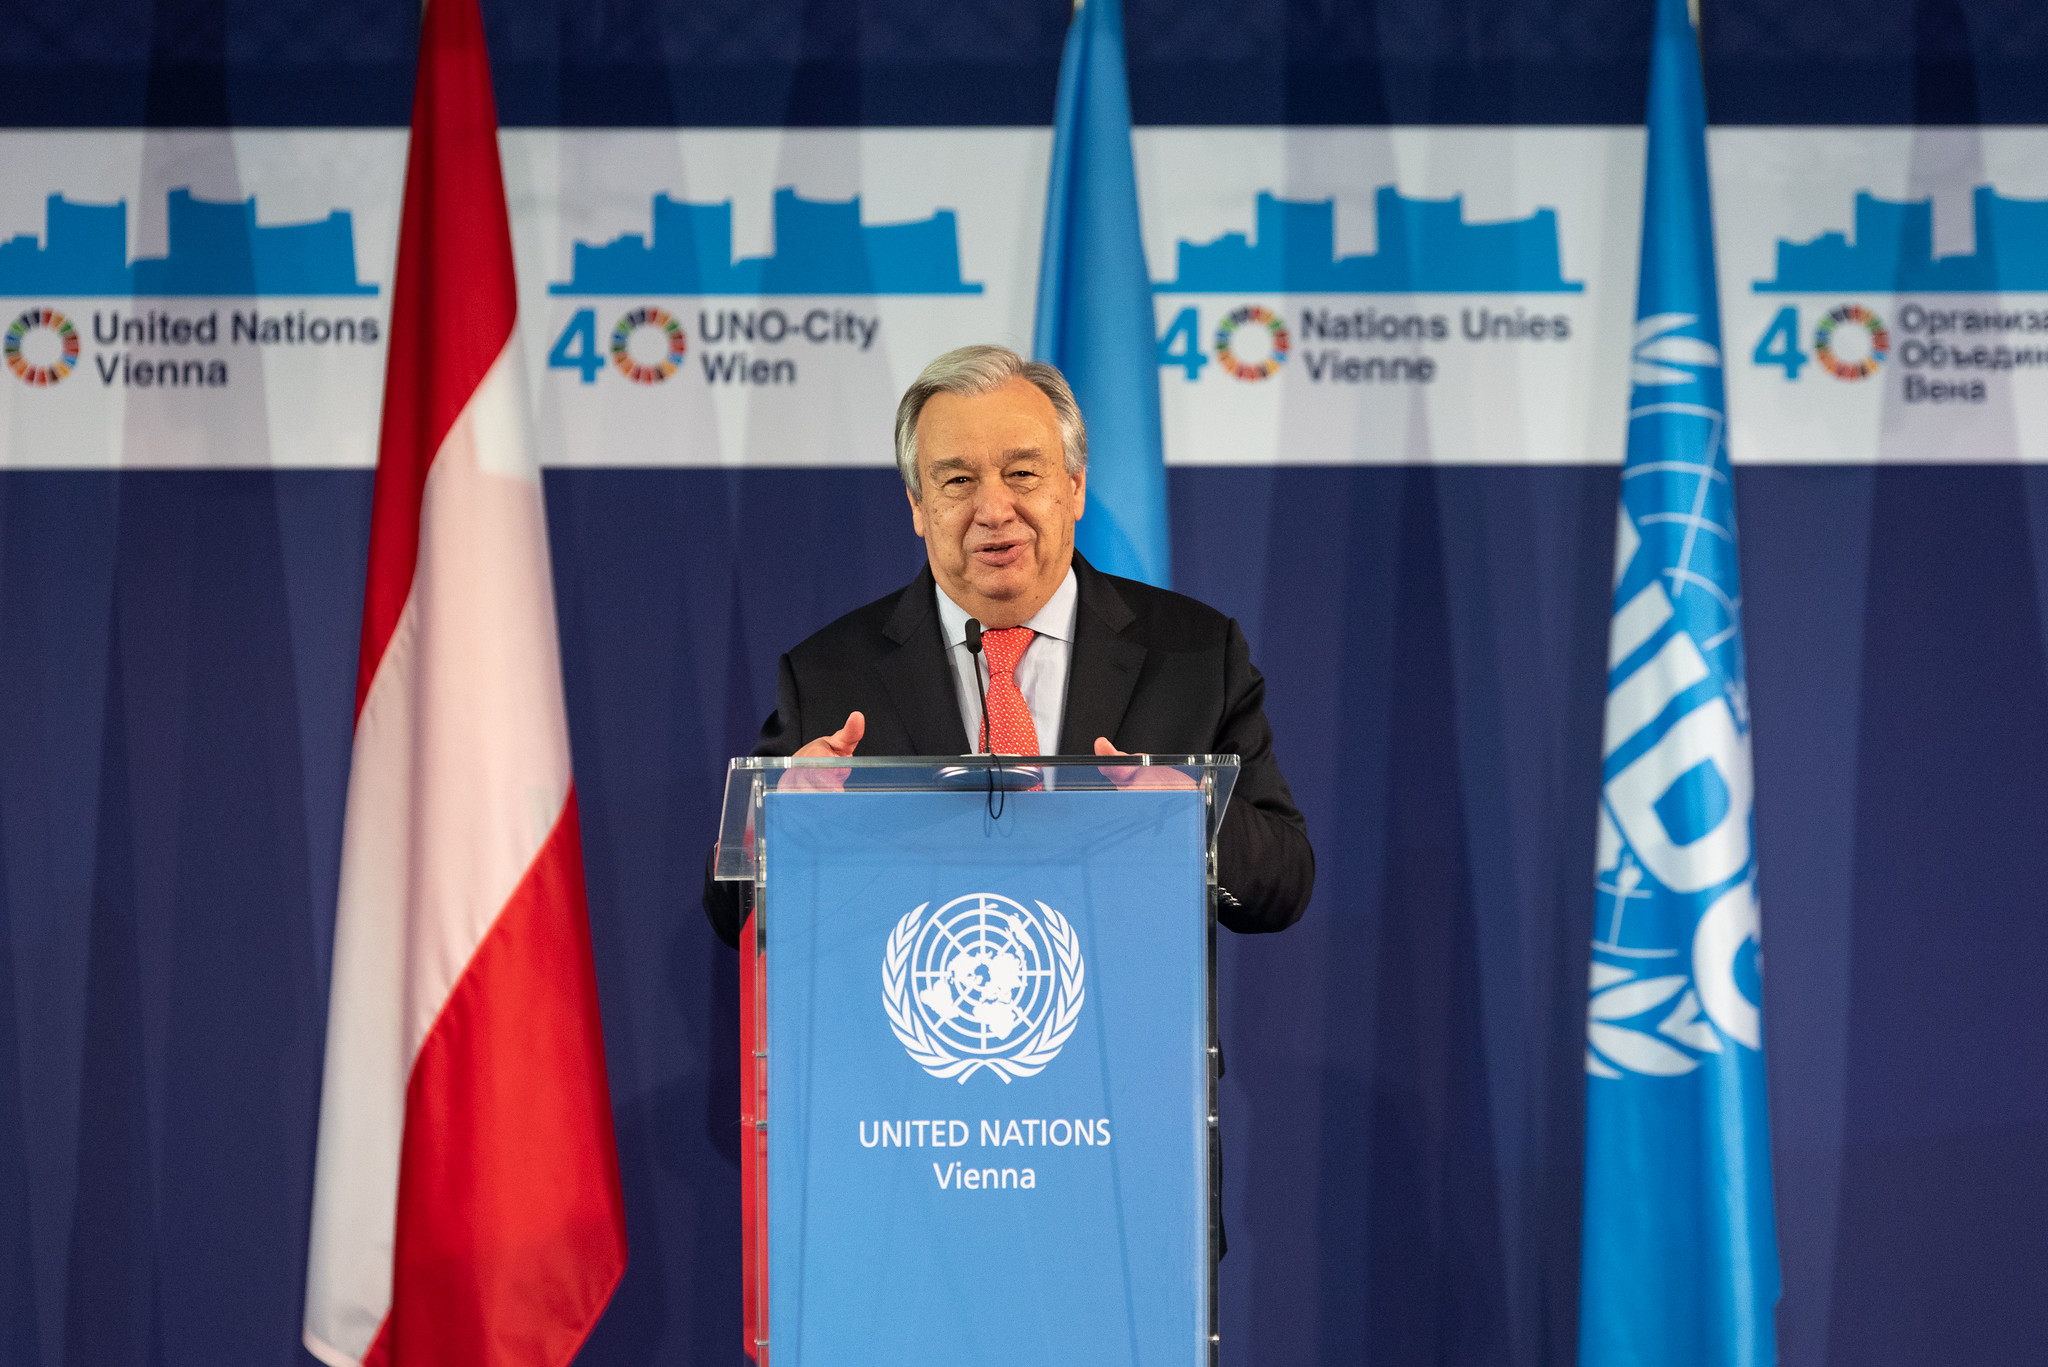 <p><sub>Generálny tajomník OSN António Guterres počas <a href="/unis/sk/events/2019/vic40.html">40. výročia založenia Viedenského medzinárodného centra</a> v roku 2019.</span></sub></p>